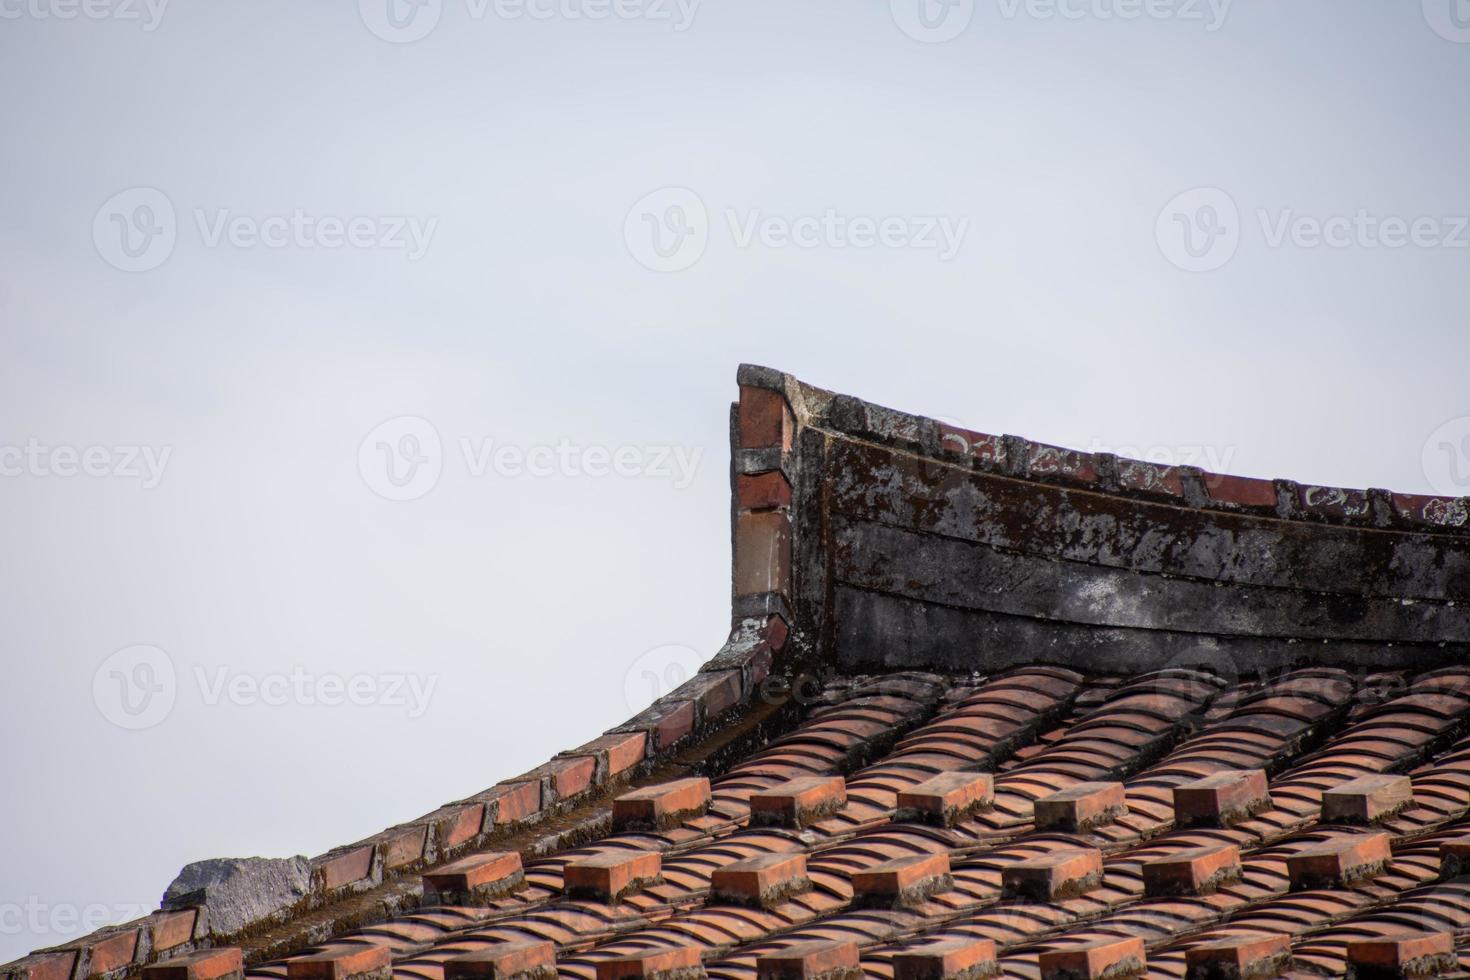 les avant-toits et les coins des bâtiments résidentiels chinois traditionnels sont faits de brique rouge et de chaux photo